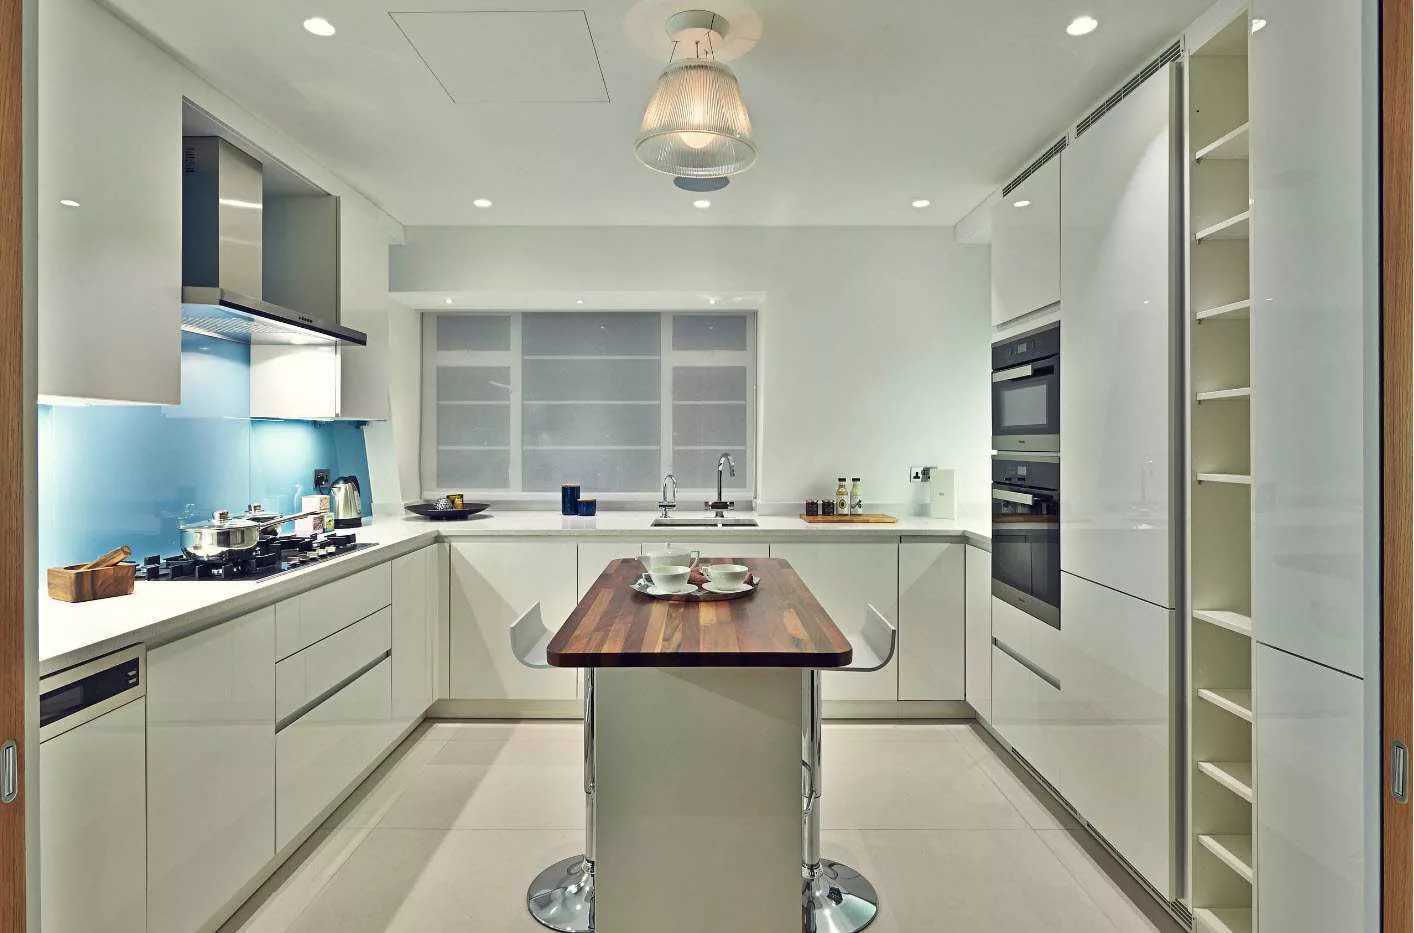 Дизайн кухни в частном доме: как правильно распланировать обустройство своими руками, проекты с окном и небольшой кладовкой, виды кухонь